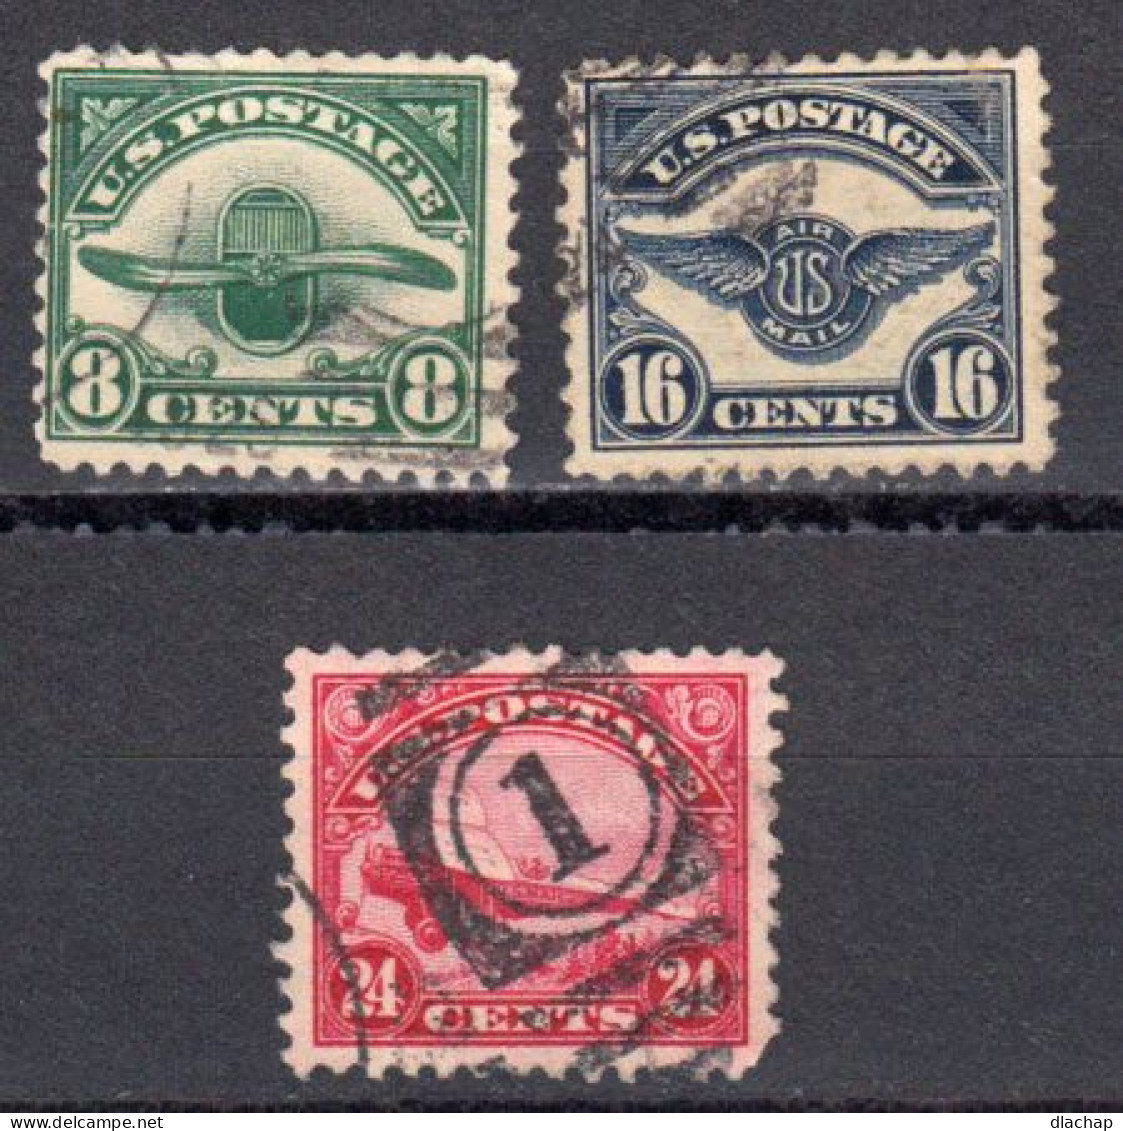 Etats Unis Poste Aerienne 1923 Yvert 4 / 6 Obliteres - 1a. 1918-1940 Used